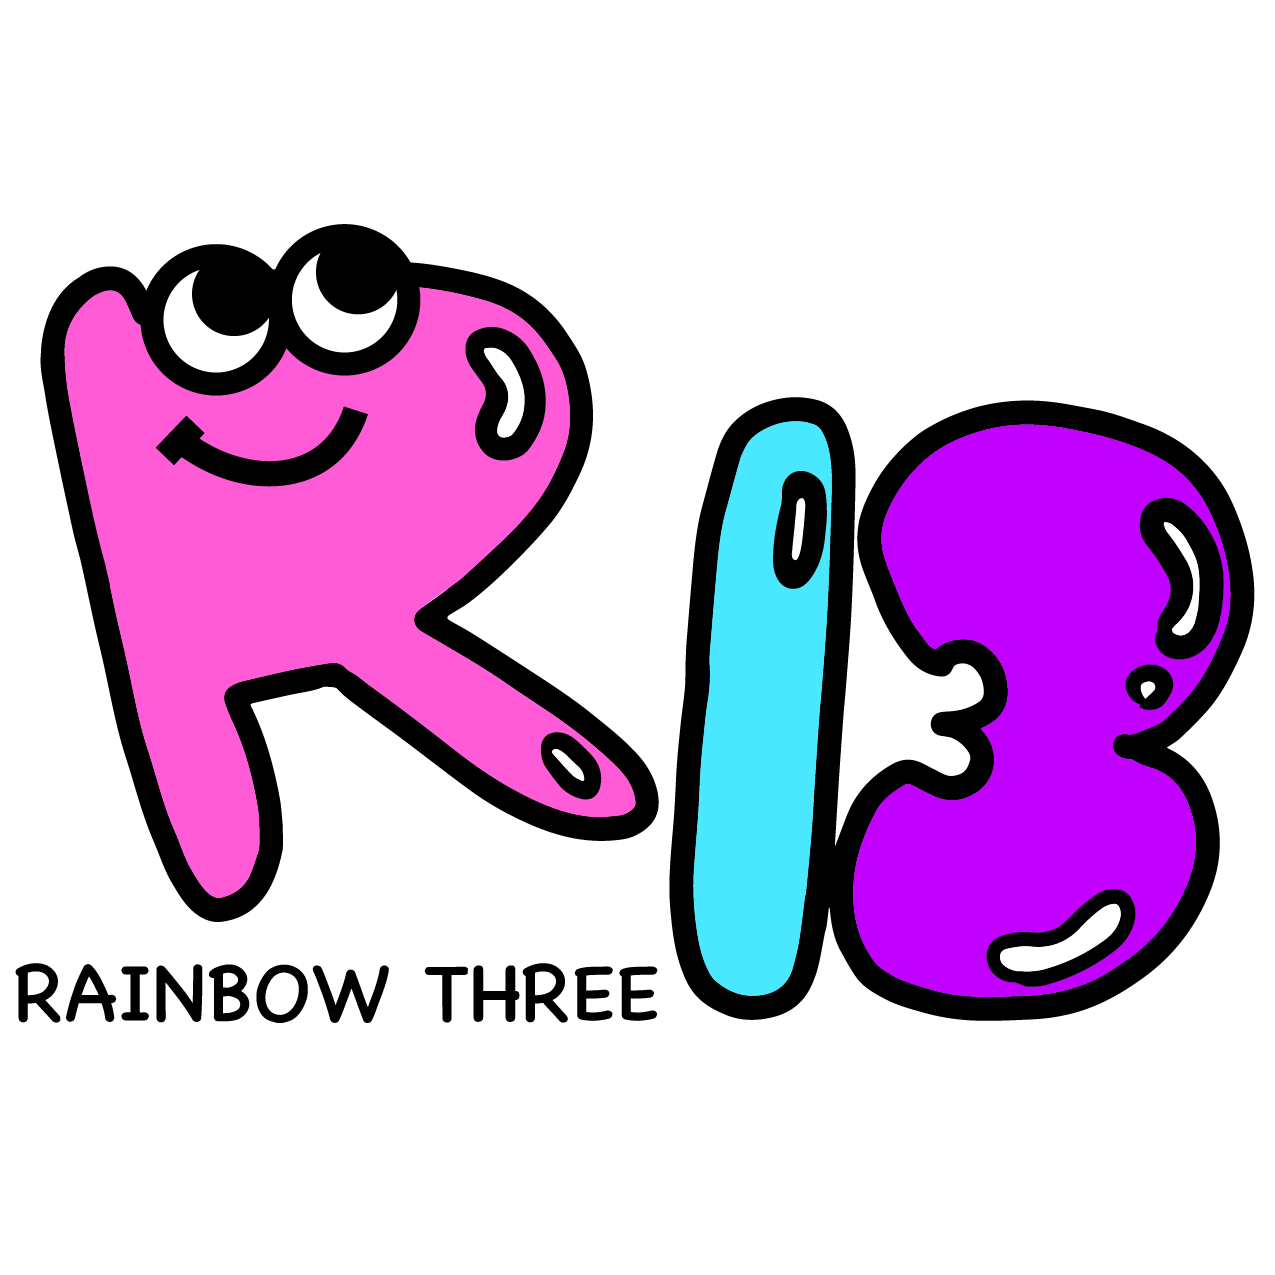 RAINBOW THREE